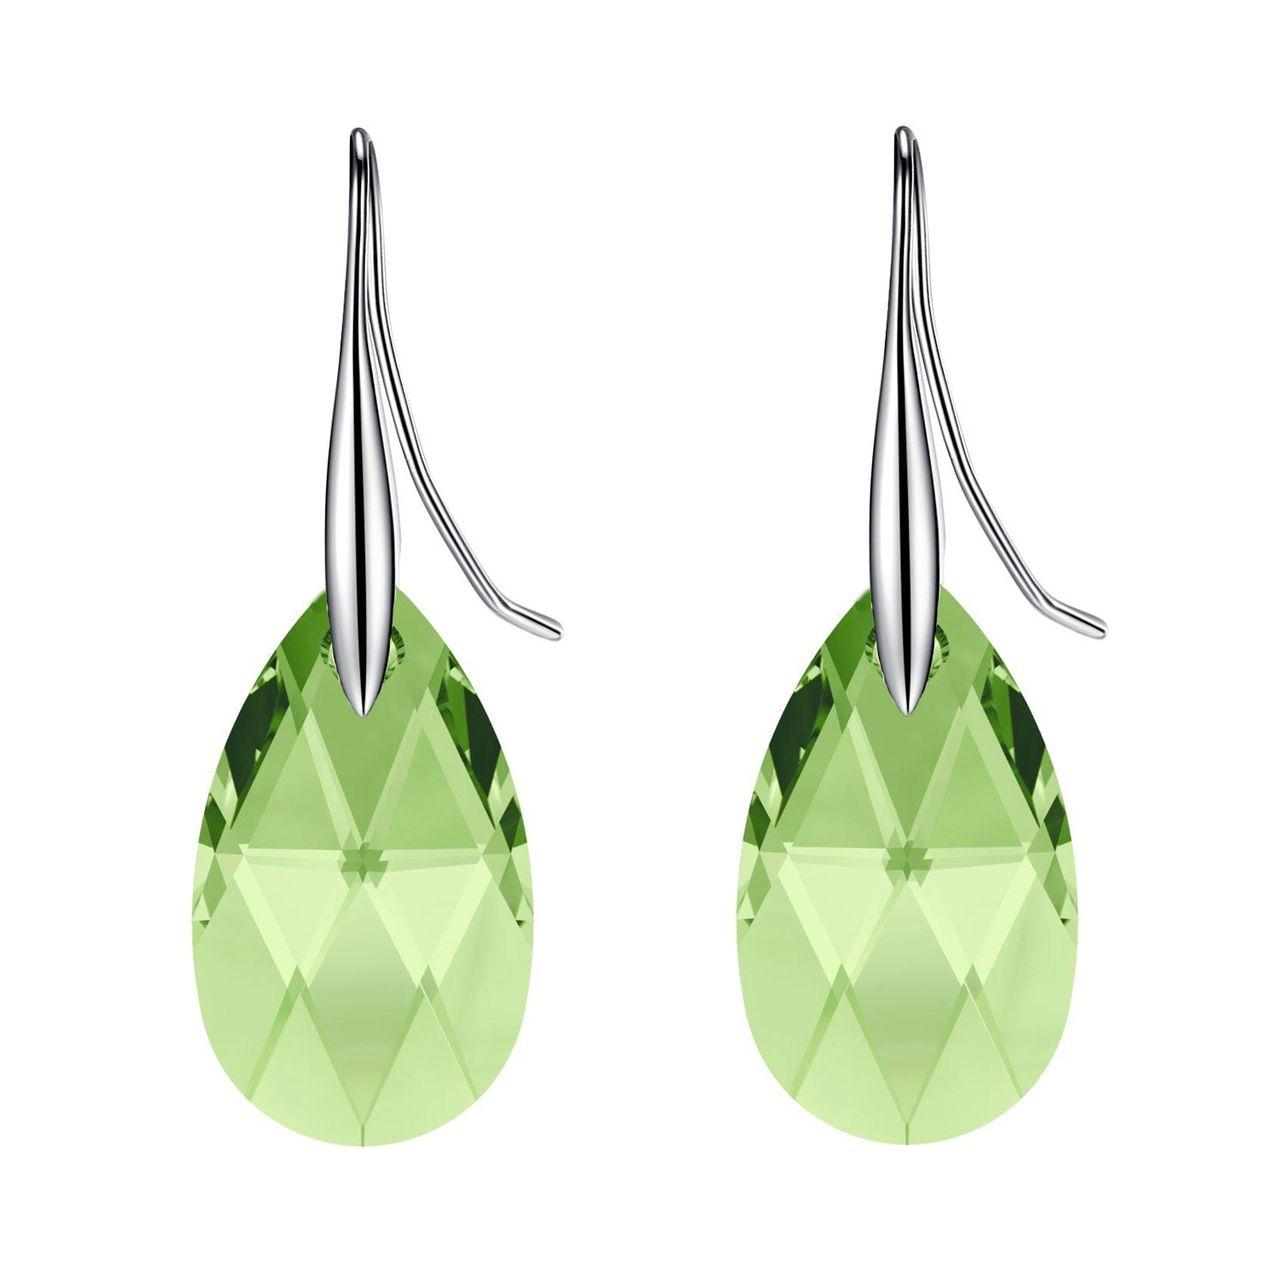 Green Teardrop and Triangle Logo - Peridot Green Teardrop Crystal Earrings. Sterling Silver